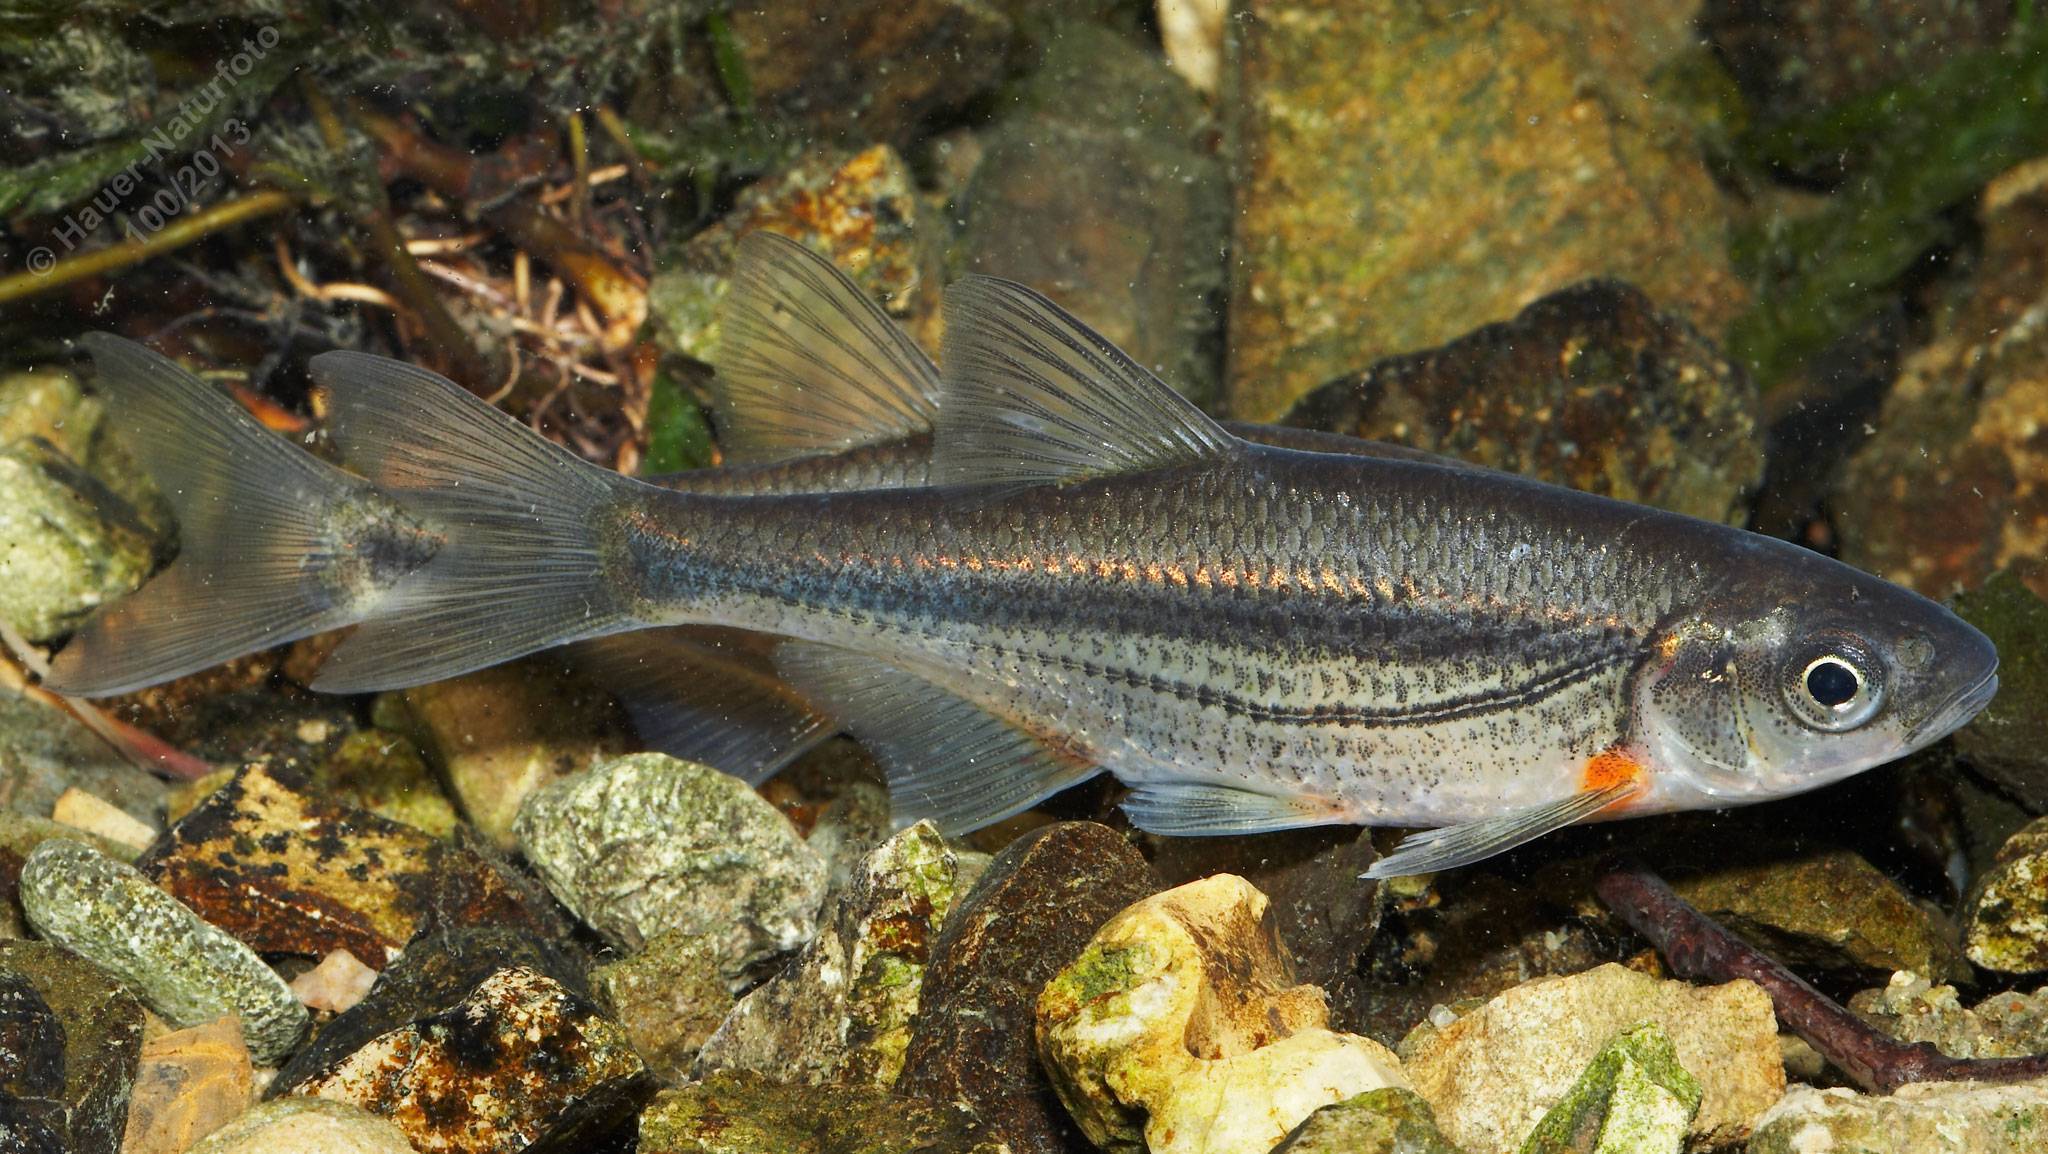 Рыба ерш (обыкновенный, морской, речной) — фото, как выглядит, где живет, чем питается